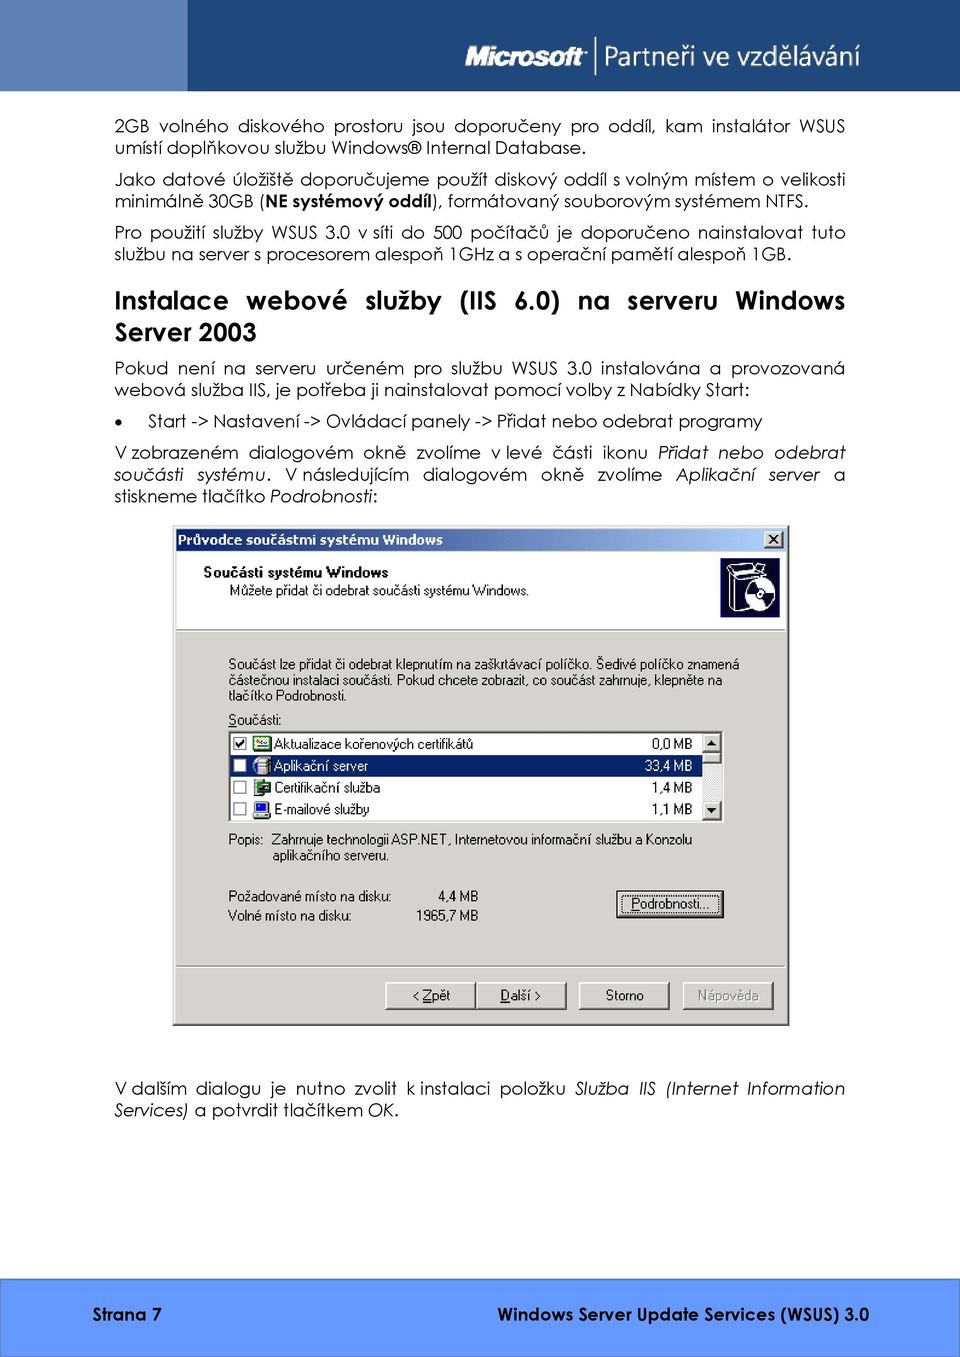 0 v síti do 500 počítačů je doporučeno nainstalovat tuto službu na server s procesorem alespoň 1GHz a s operační pamětí alespoň 1GB. Instalace webové služby (IIS 6.